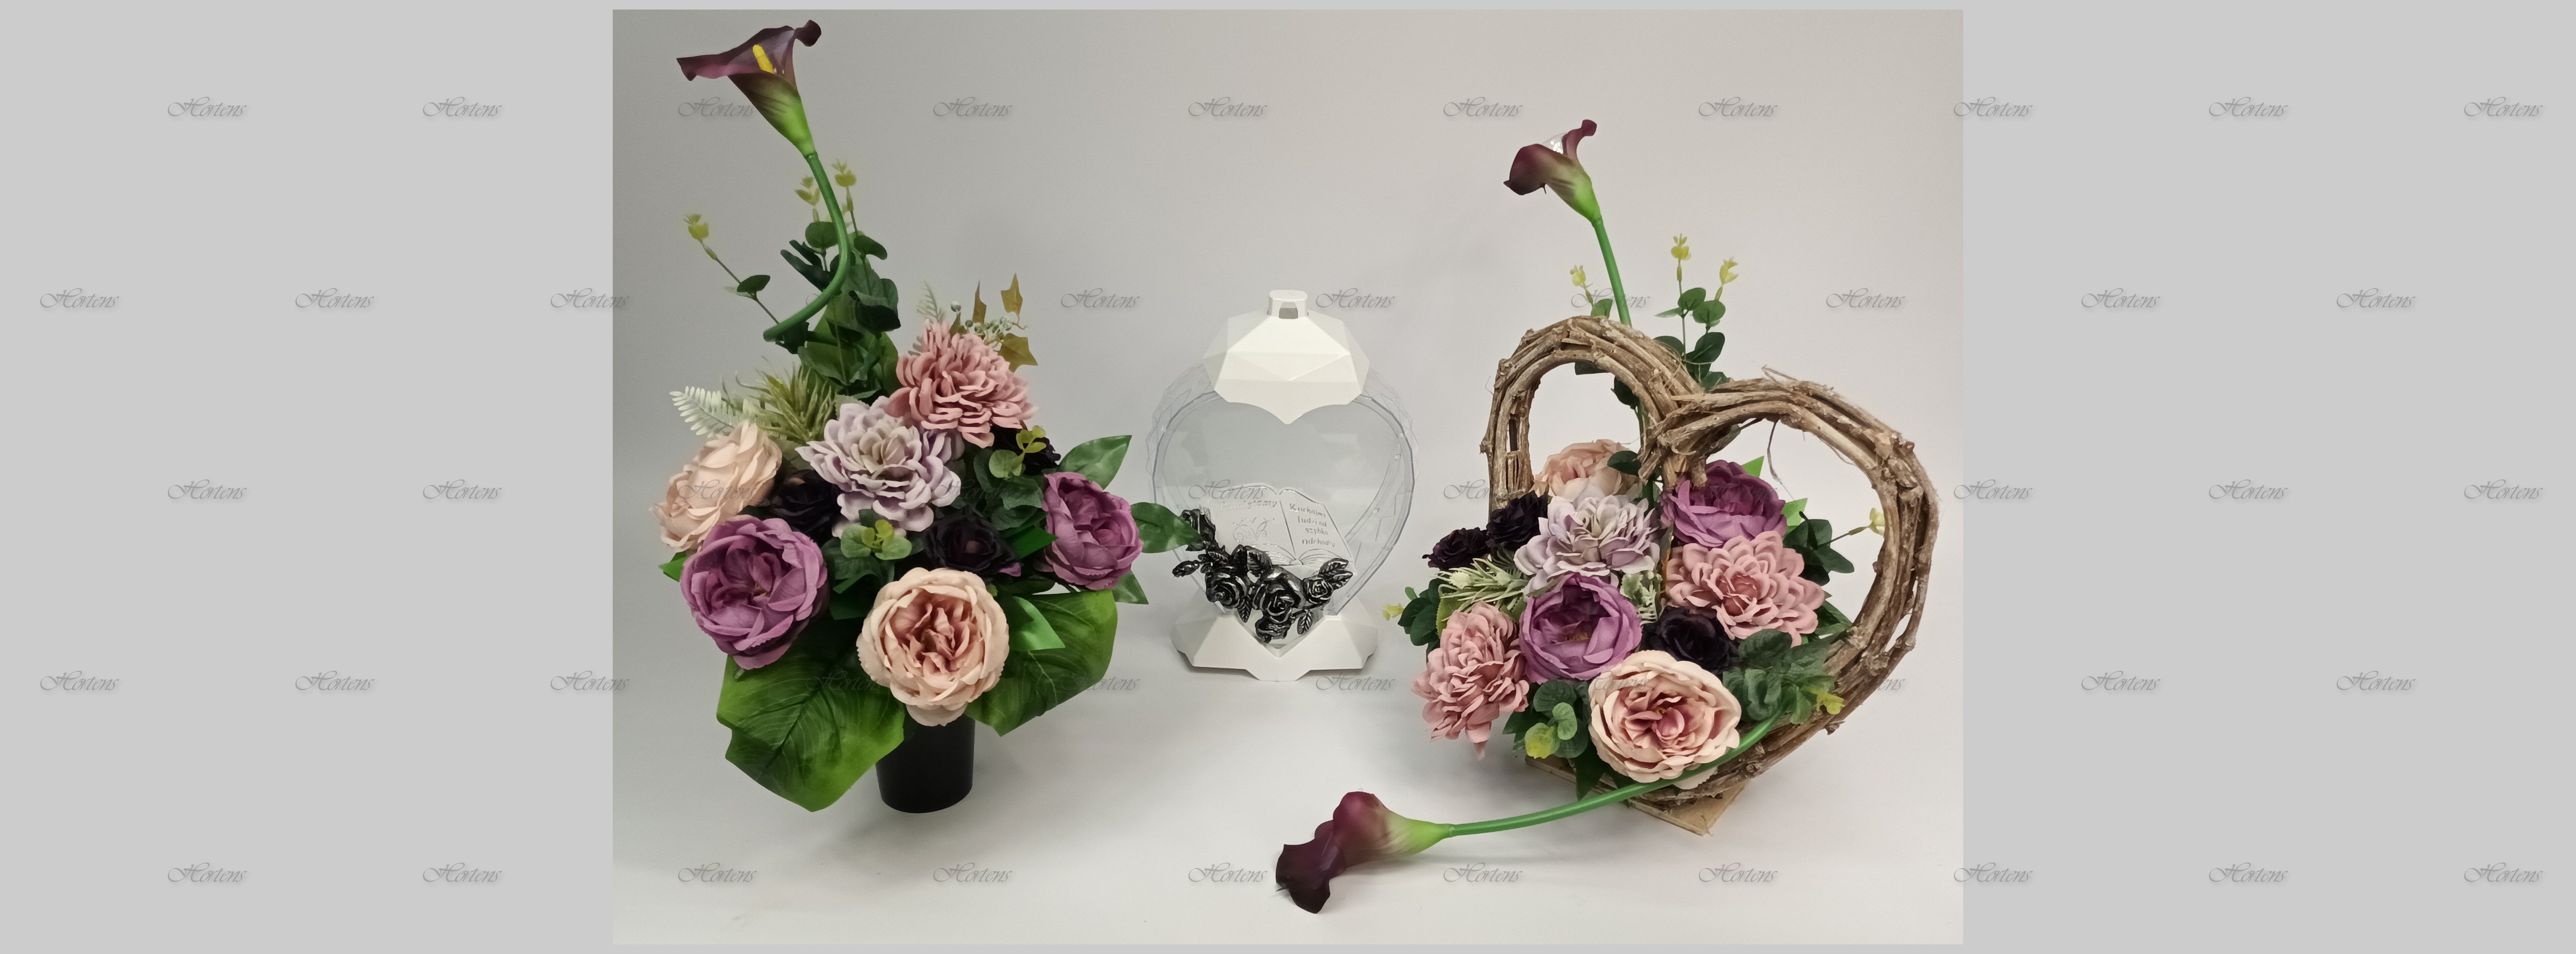 výrobce svíček velkoobchodníci s umělými květinami sádrové figurky Polsko